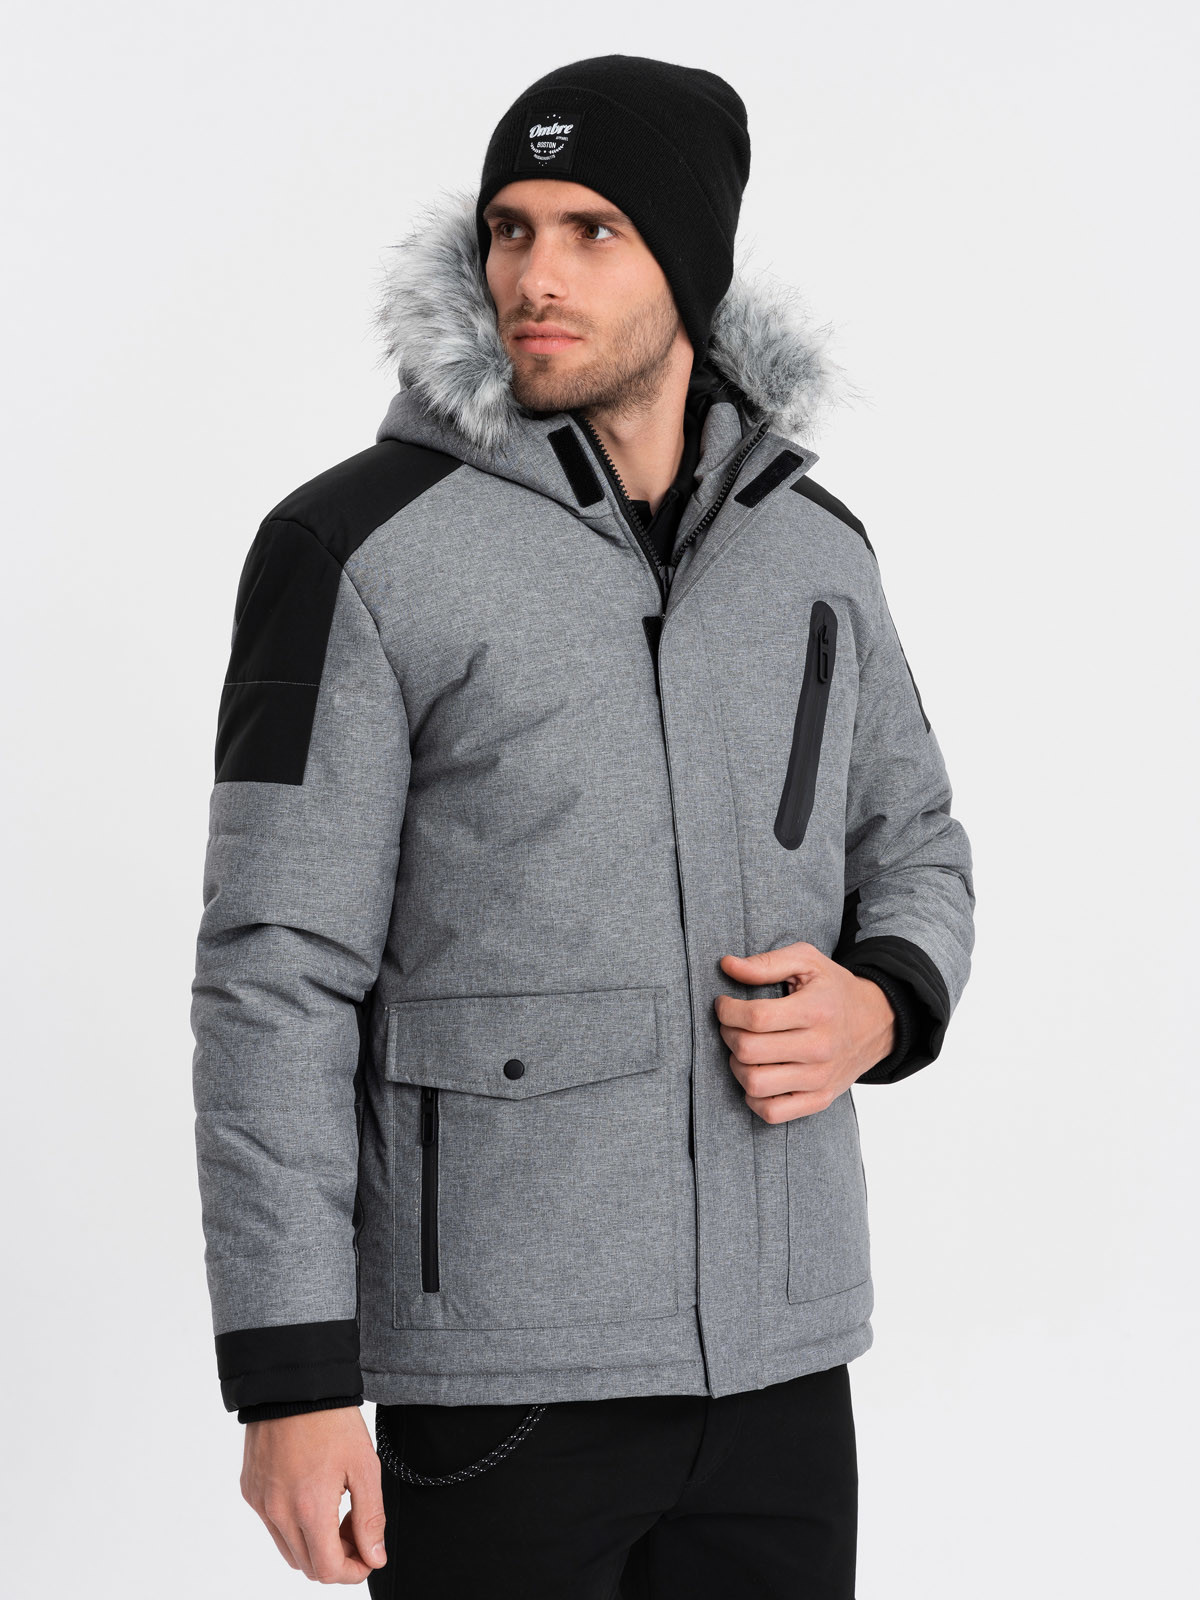 Pánská zimní bunda s nastavitelnou kapucí s odnímatelnou kožešinou - šedá a černá V1 OM-JAHP-0144